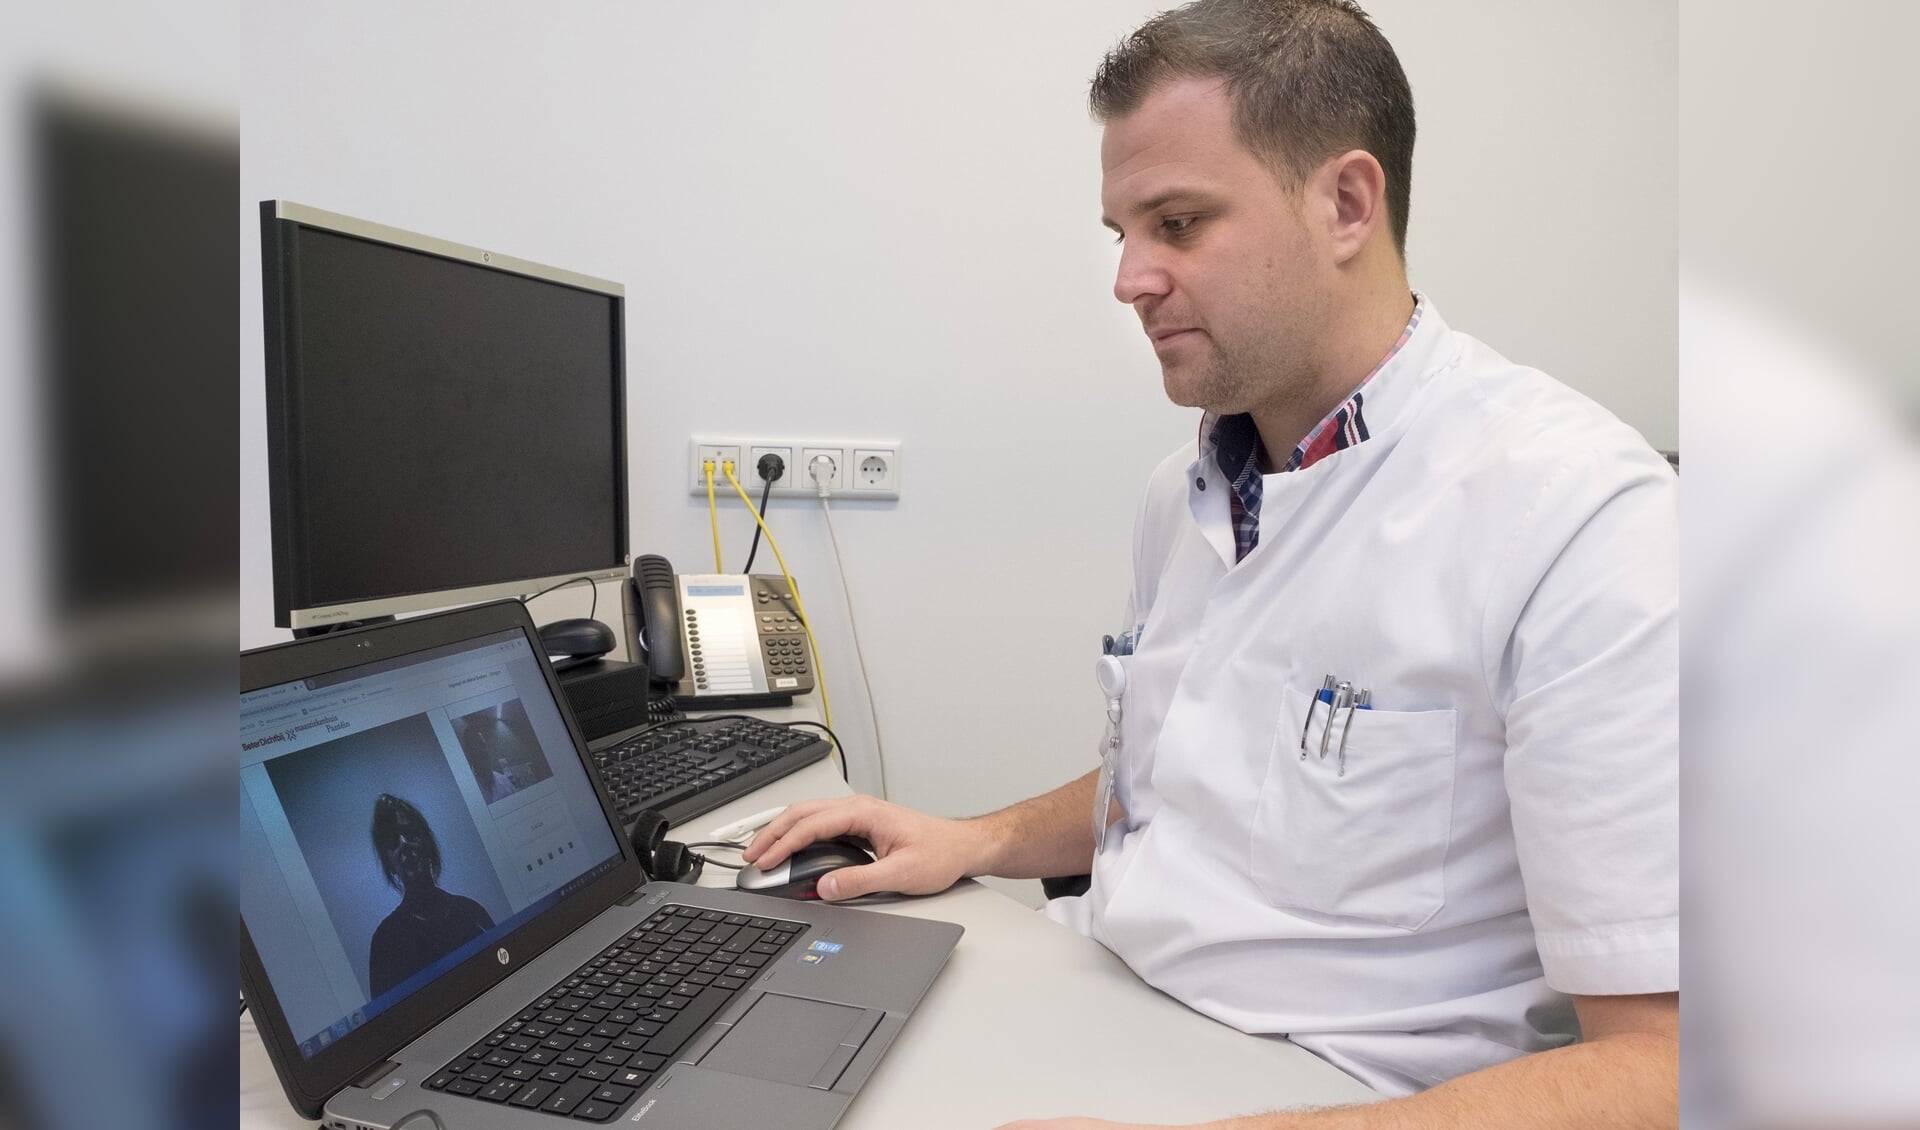 Bij het Maasziekenhuis kunnen Artsen via een beeldverbinding met de patienten overleg plegen. Oncoloog Brian Scholtes laat zien hoe het beeldbellen werkt.